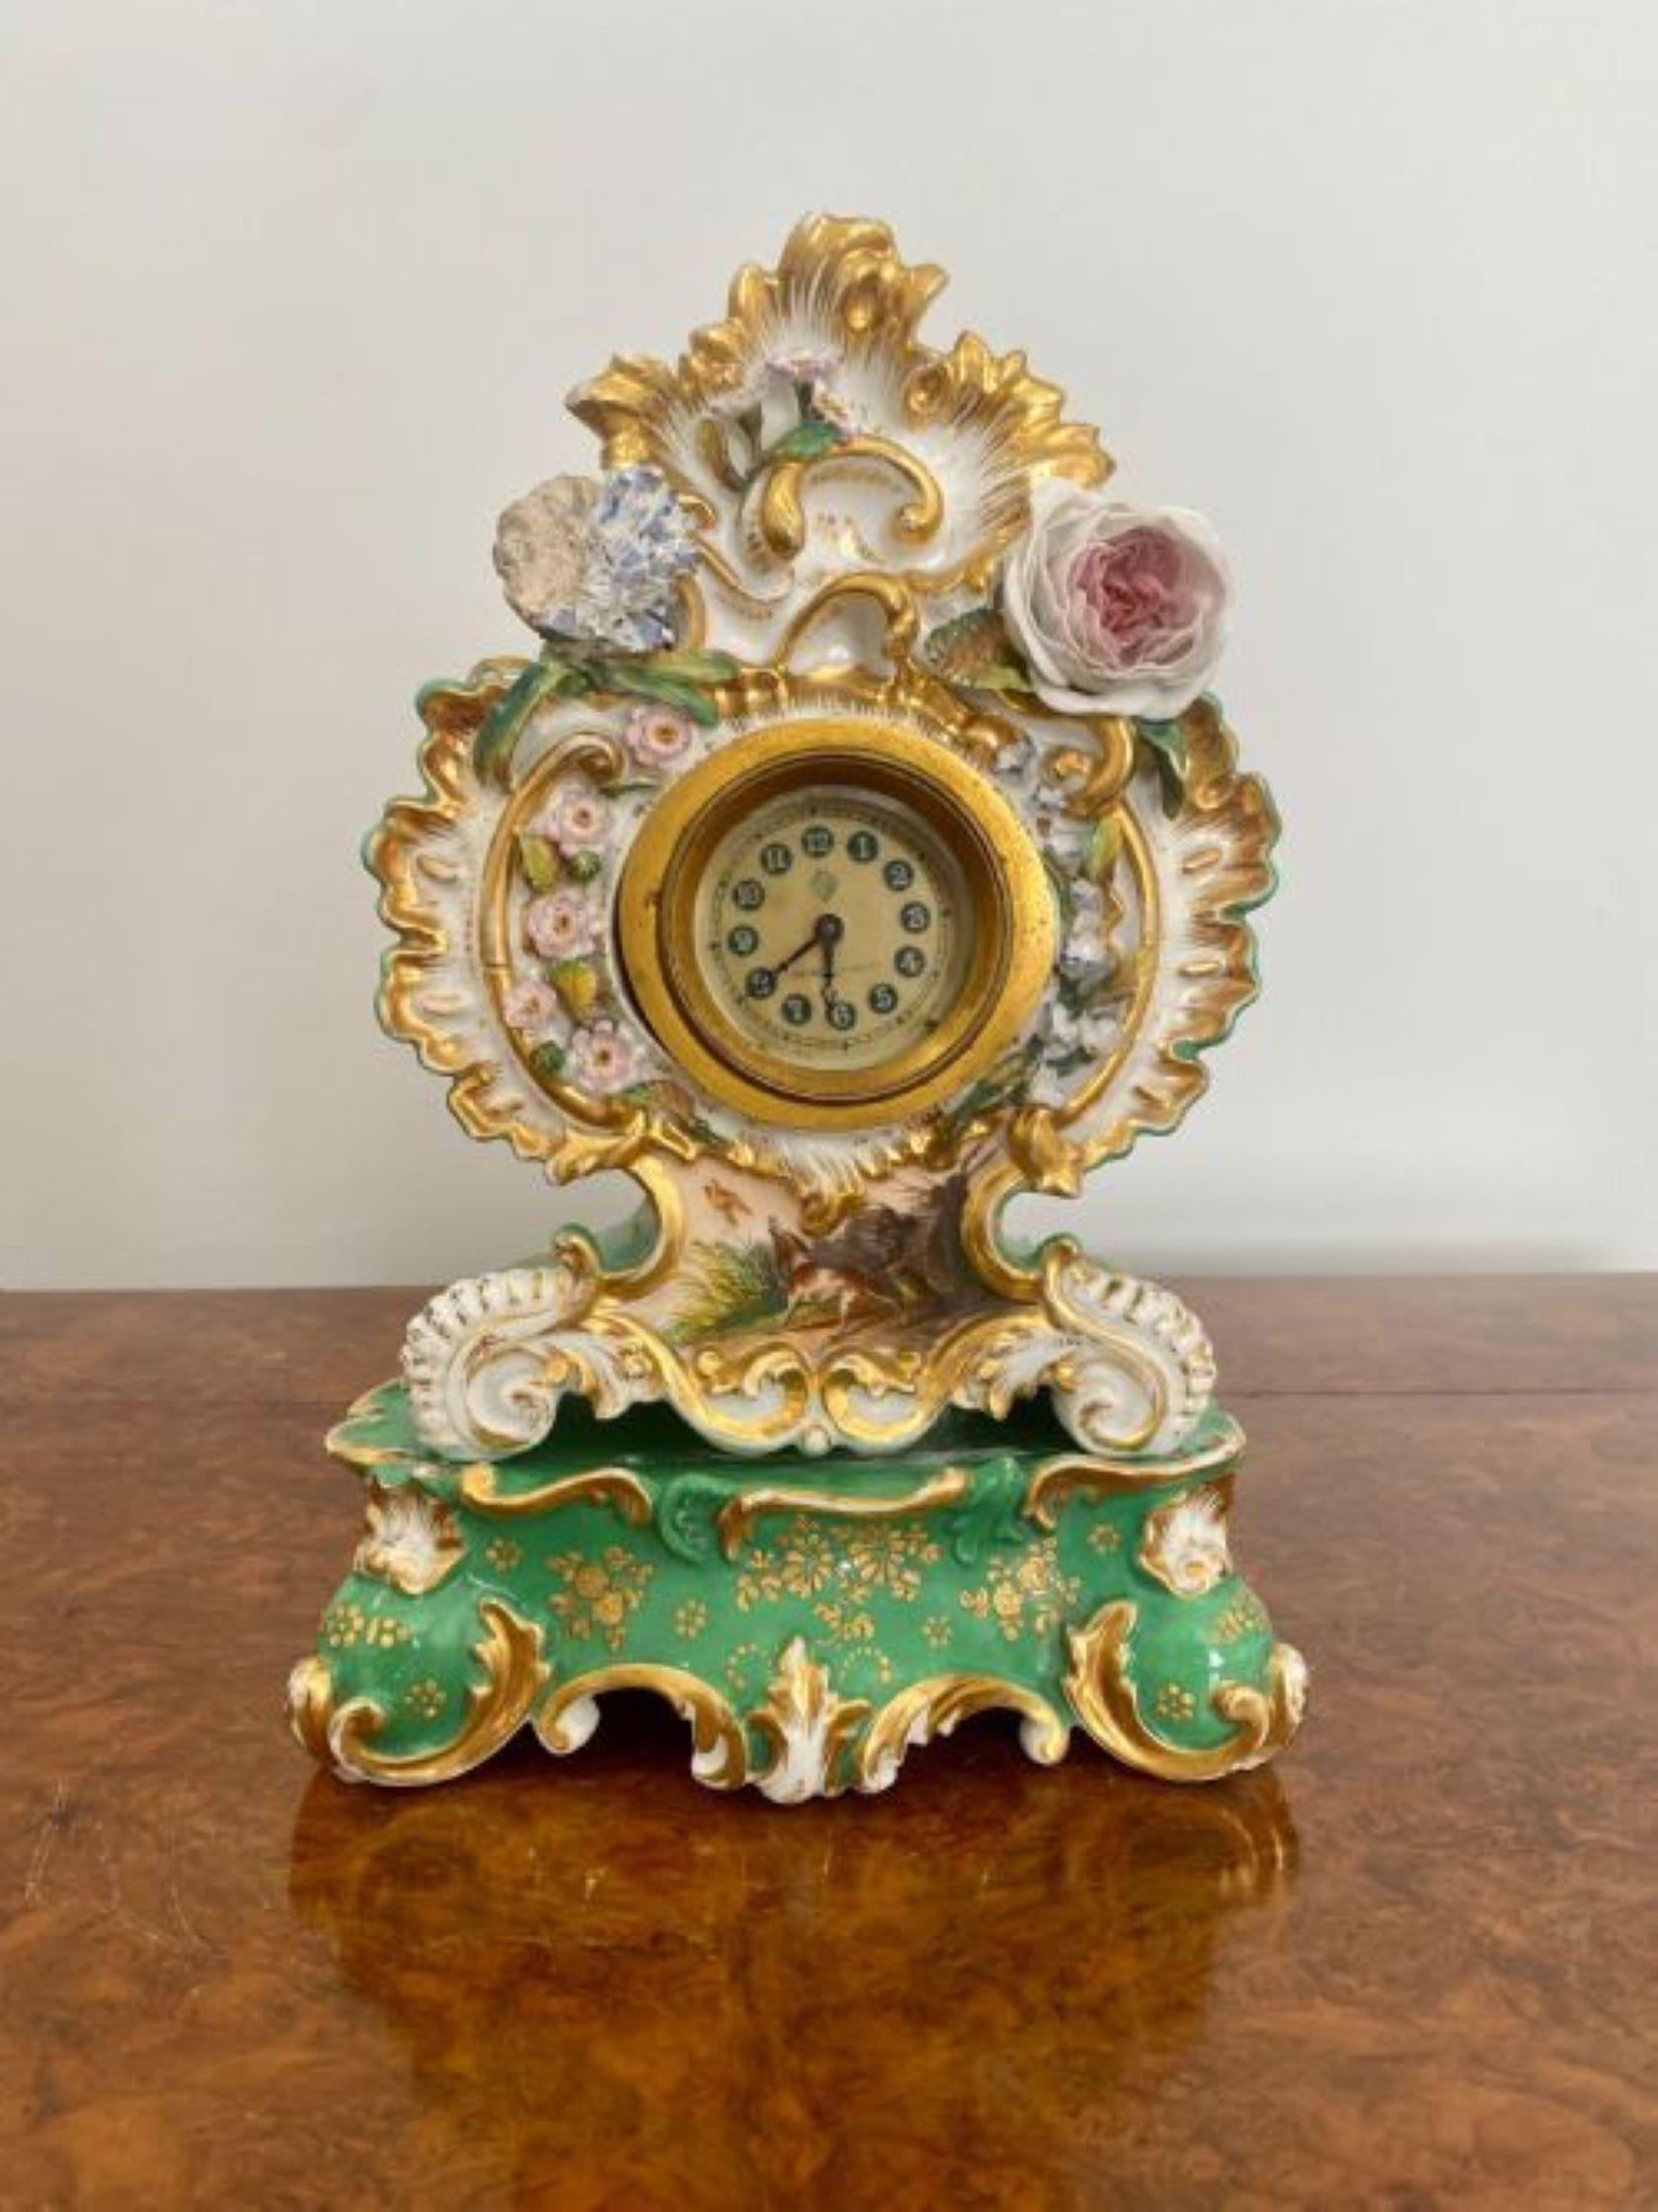 Ancienne horloge de manteau en porcelaine peinte à la main de qualité édouardienne, avec un boîtier en porcelaine décorée à la main de fleurs, de feuilles et de volutes dans de merveilleuses couleurs vertes, jaunes, roses, bleues, blanches et